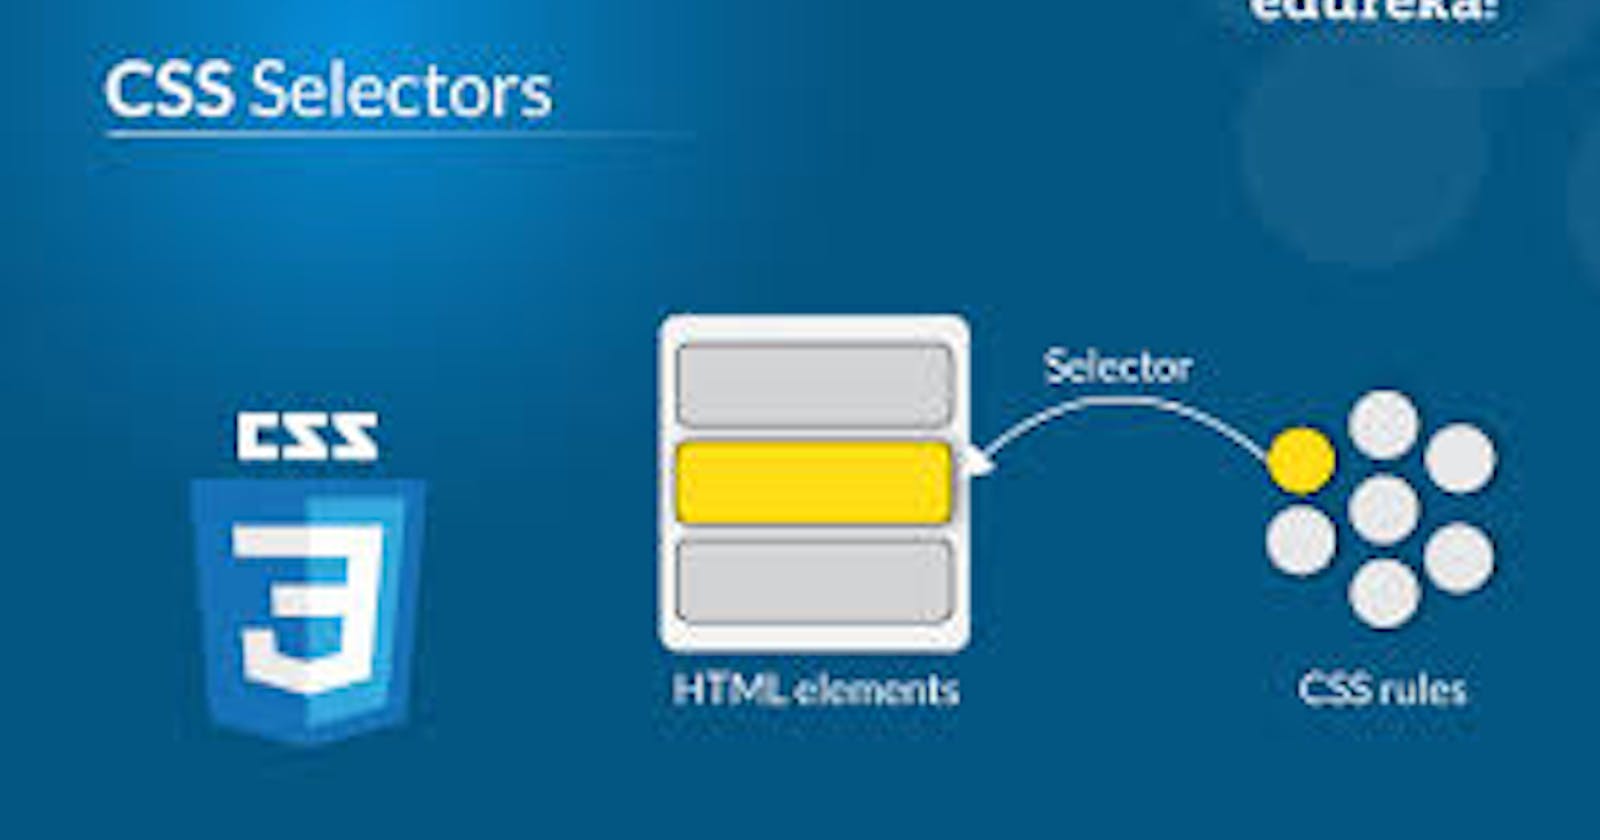 CSS Selectors in detail